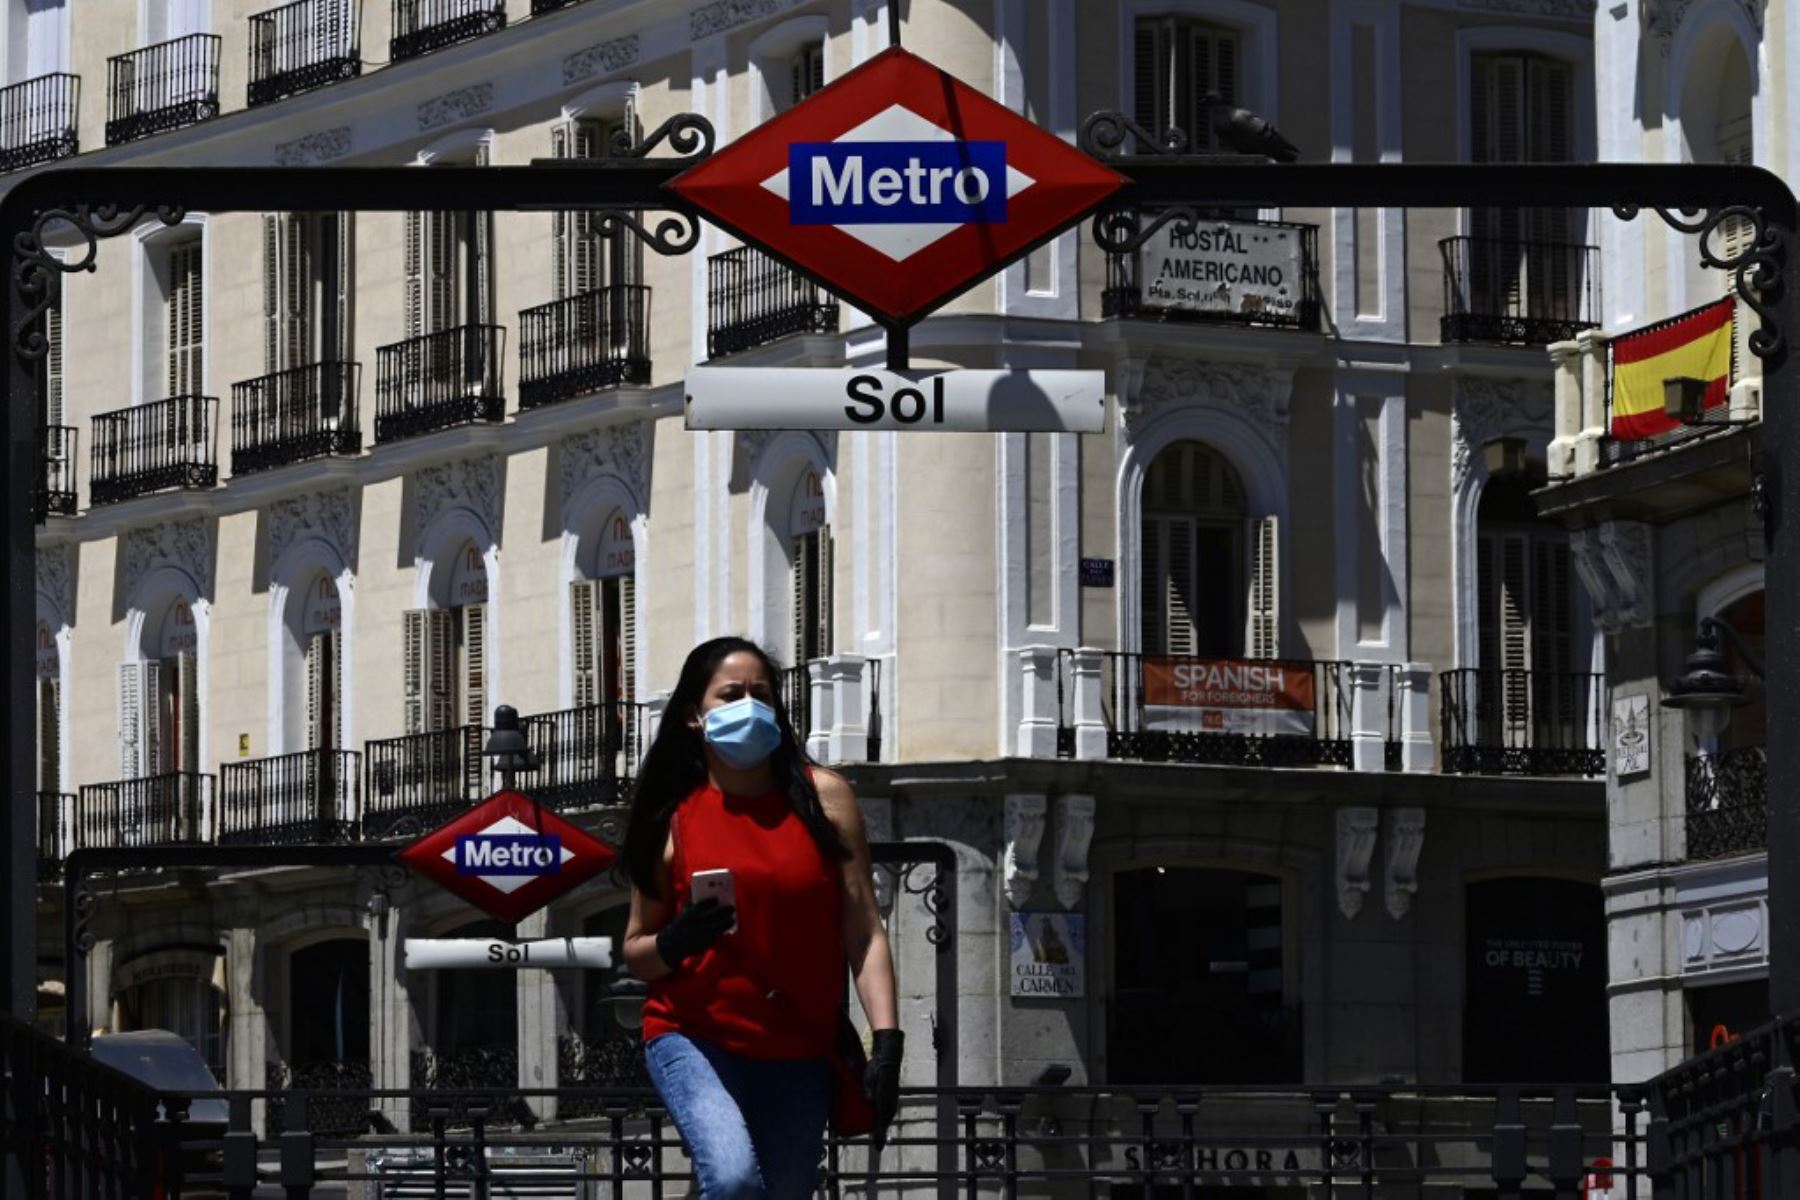 Una mujer que llevaba una máscara sale de la estación de metro Sol, ya que el uso de máscaras se hizo obligatorio en público donde no es posible el distanciamiento social.
Foto: AFP